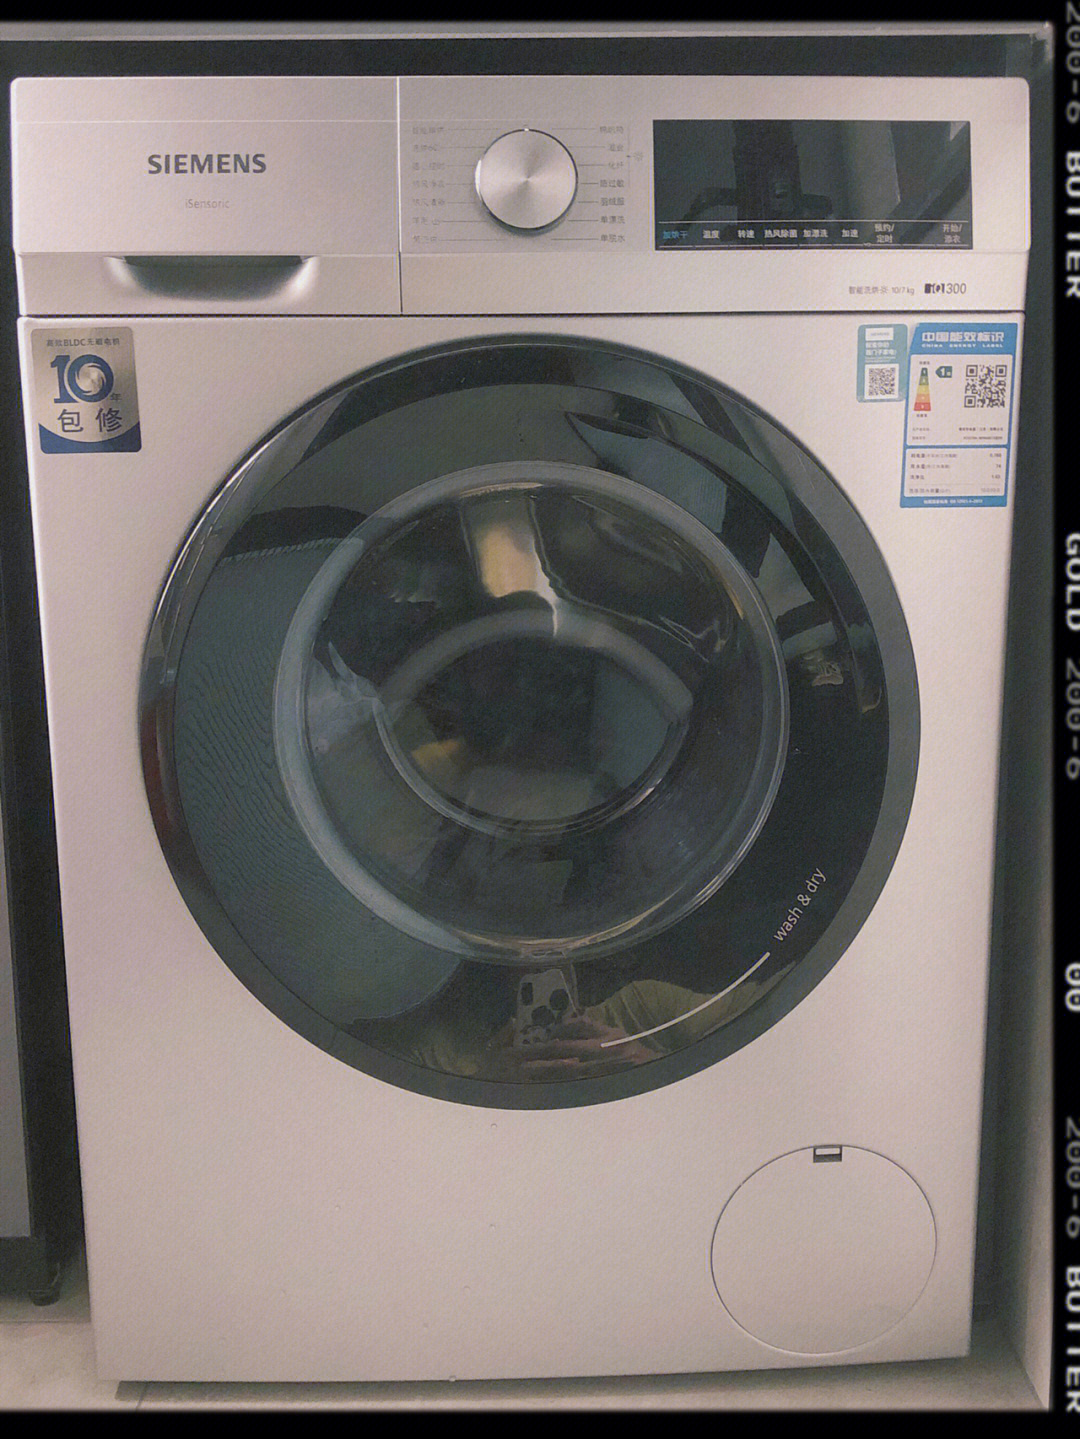 洗衣机不可烘干的标志图片